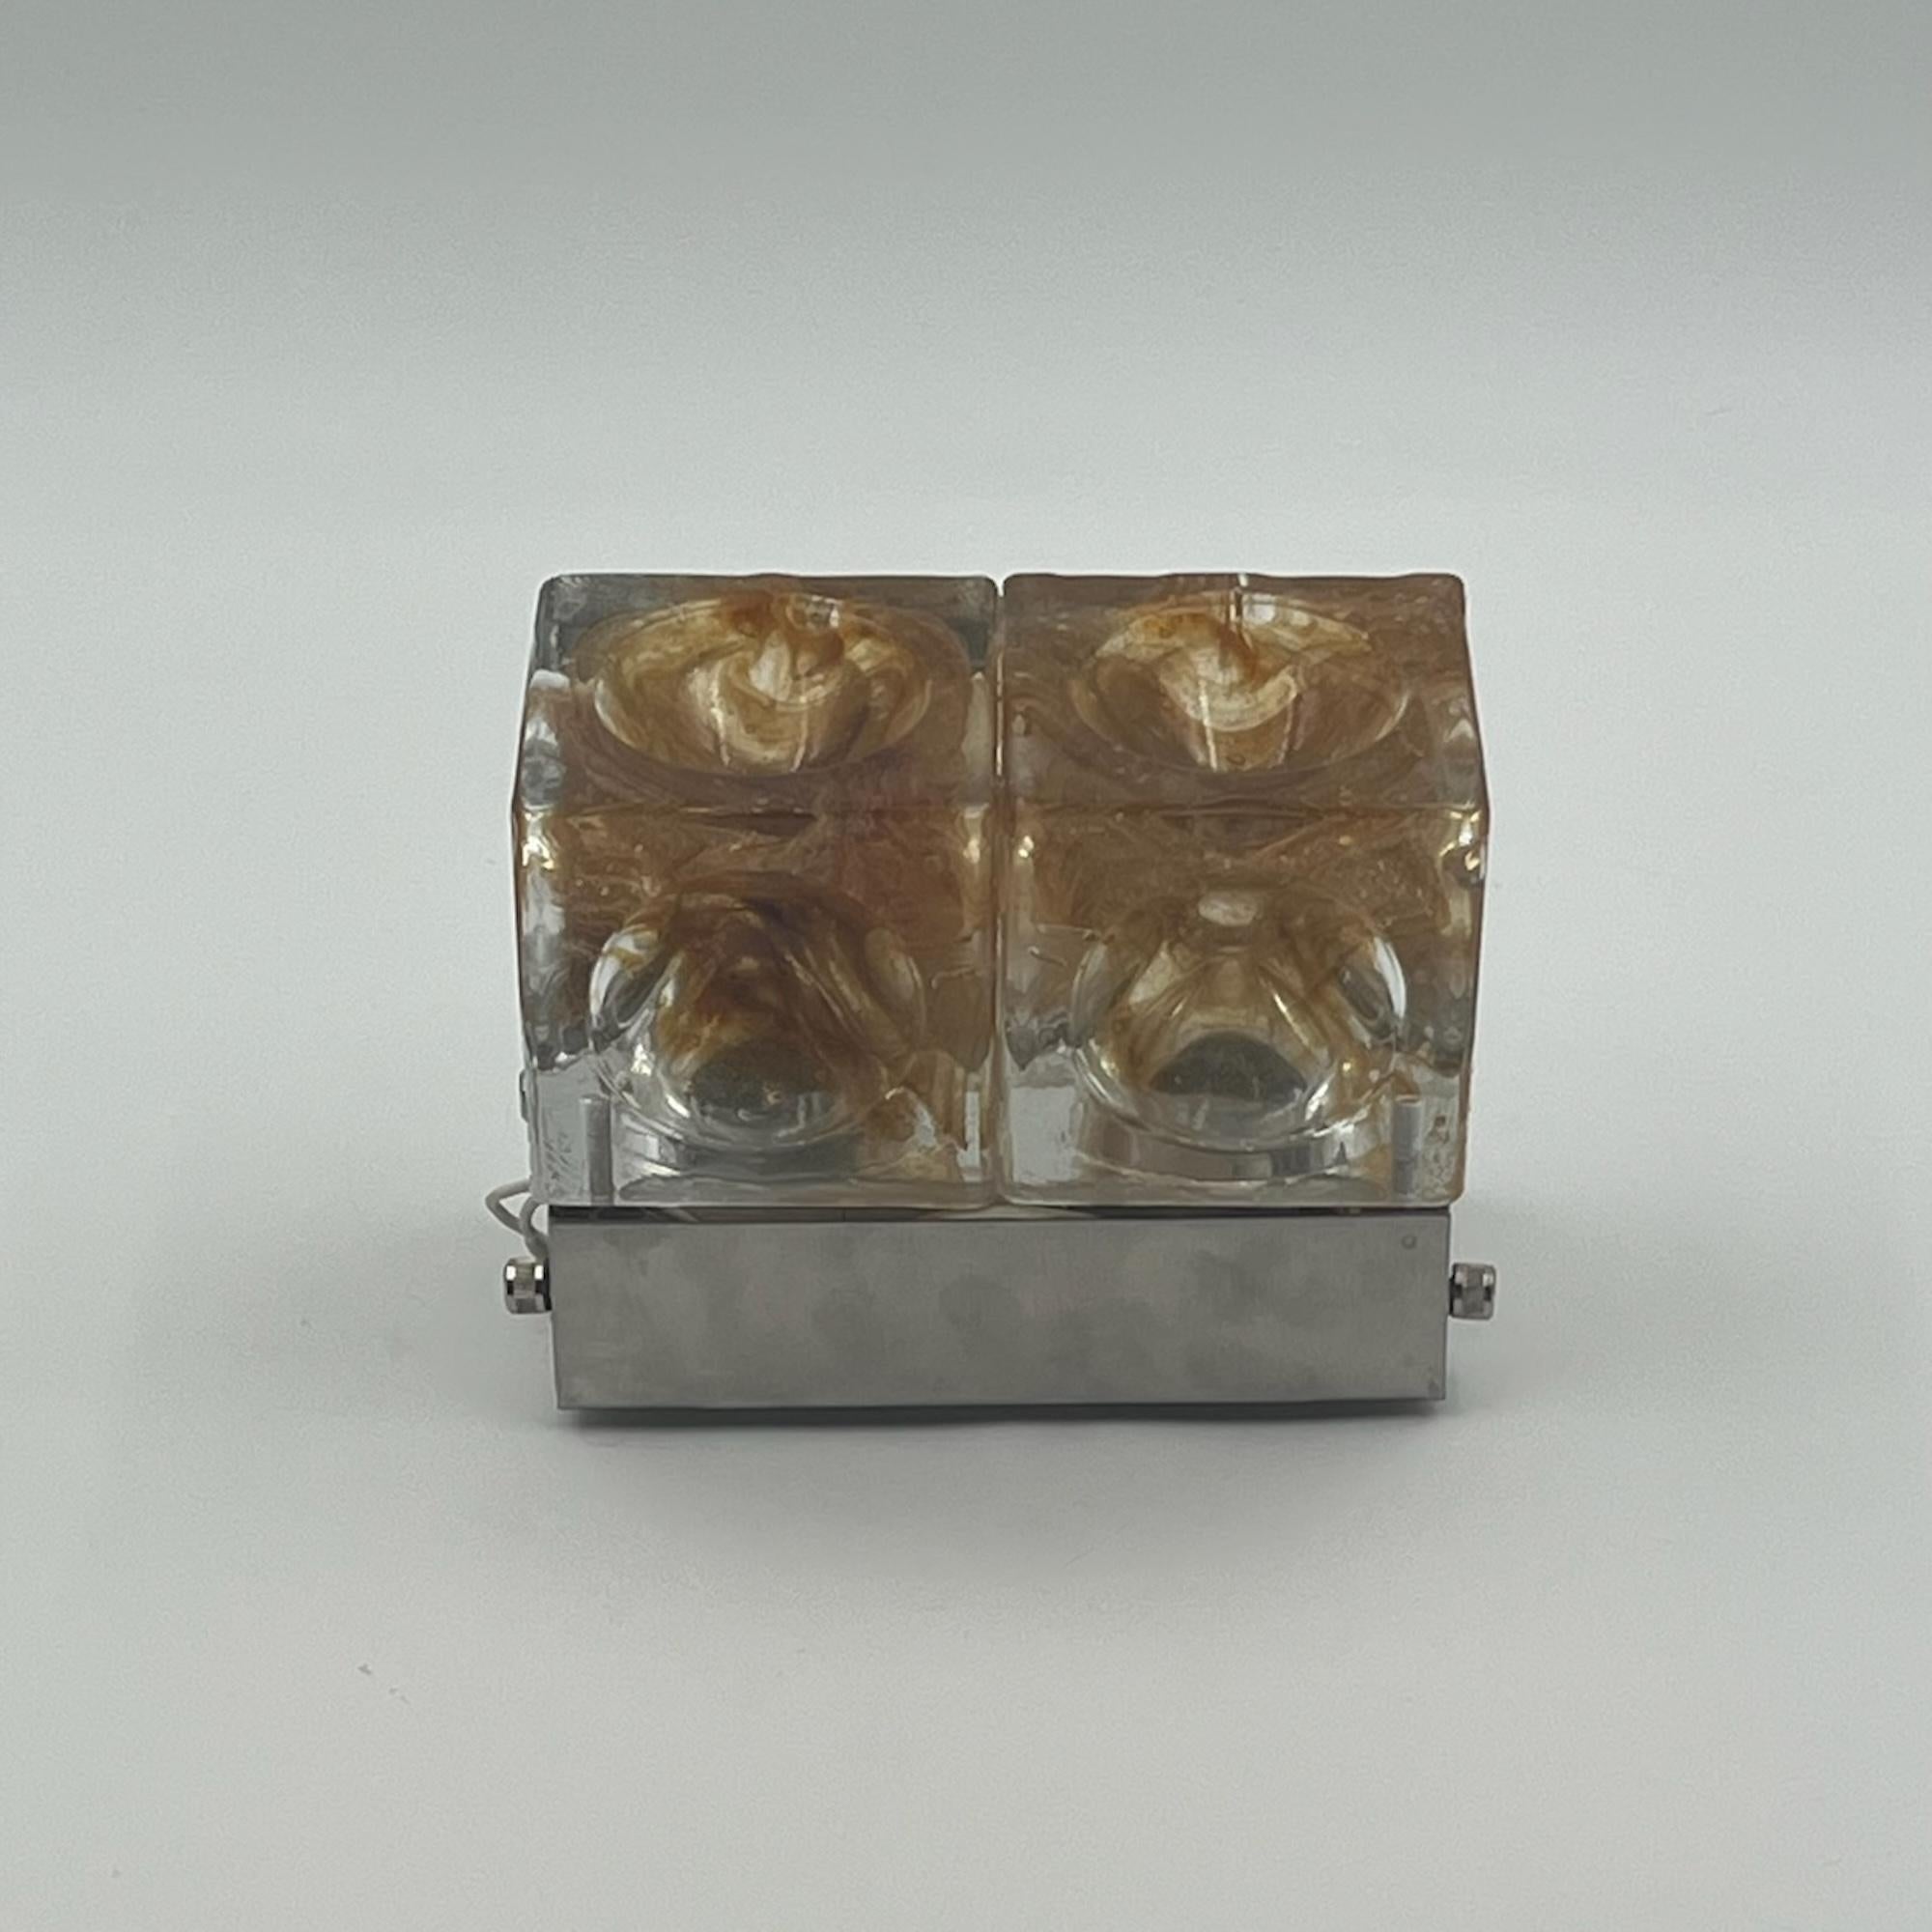 Iconic Poliarte 'Denebe' Flush Mount Lamp 1970s - Brutalist Handmade Glass  For Sale 3